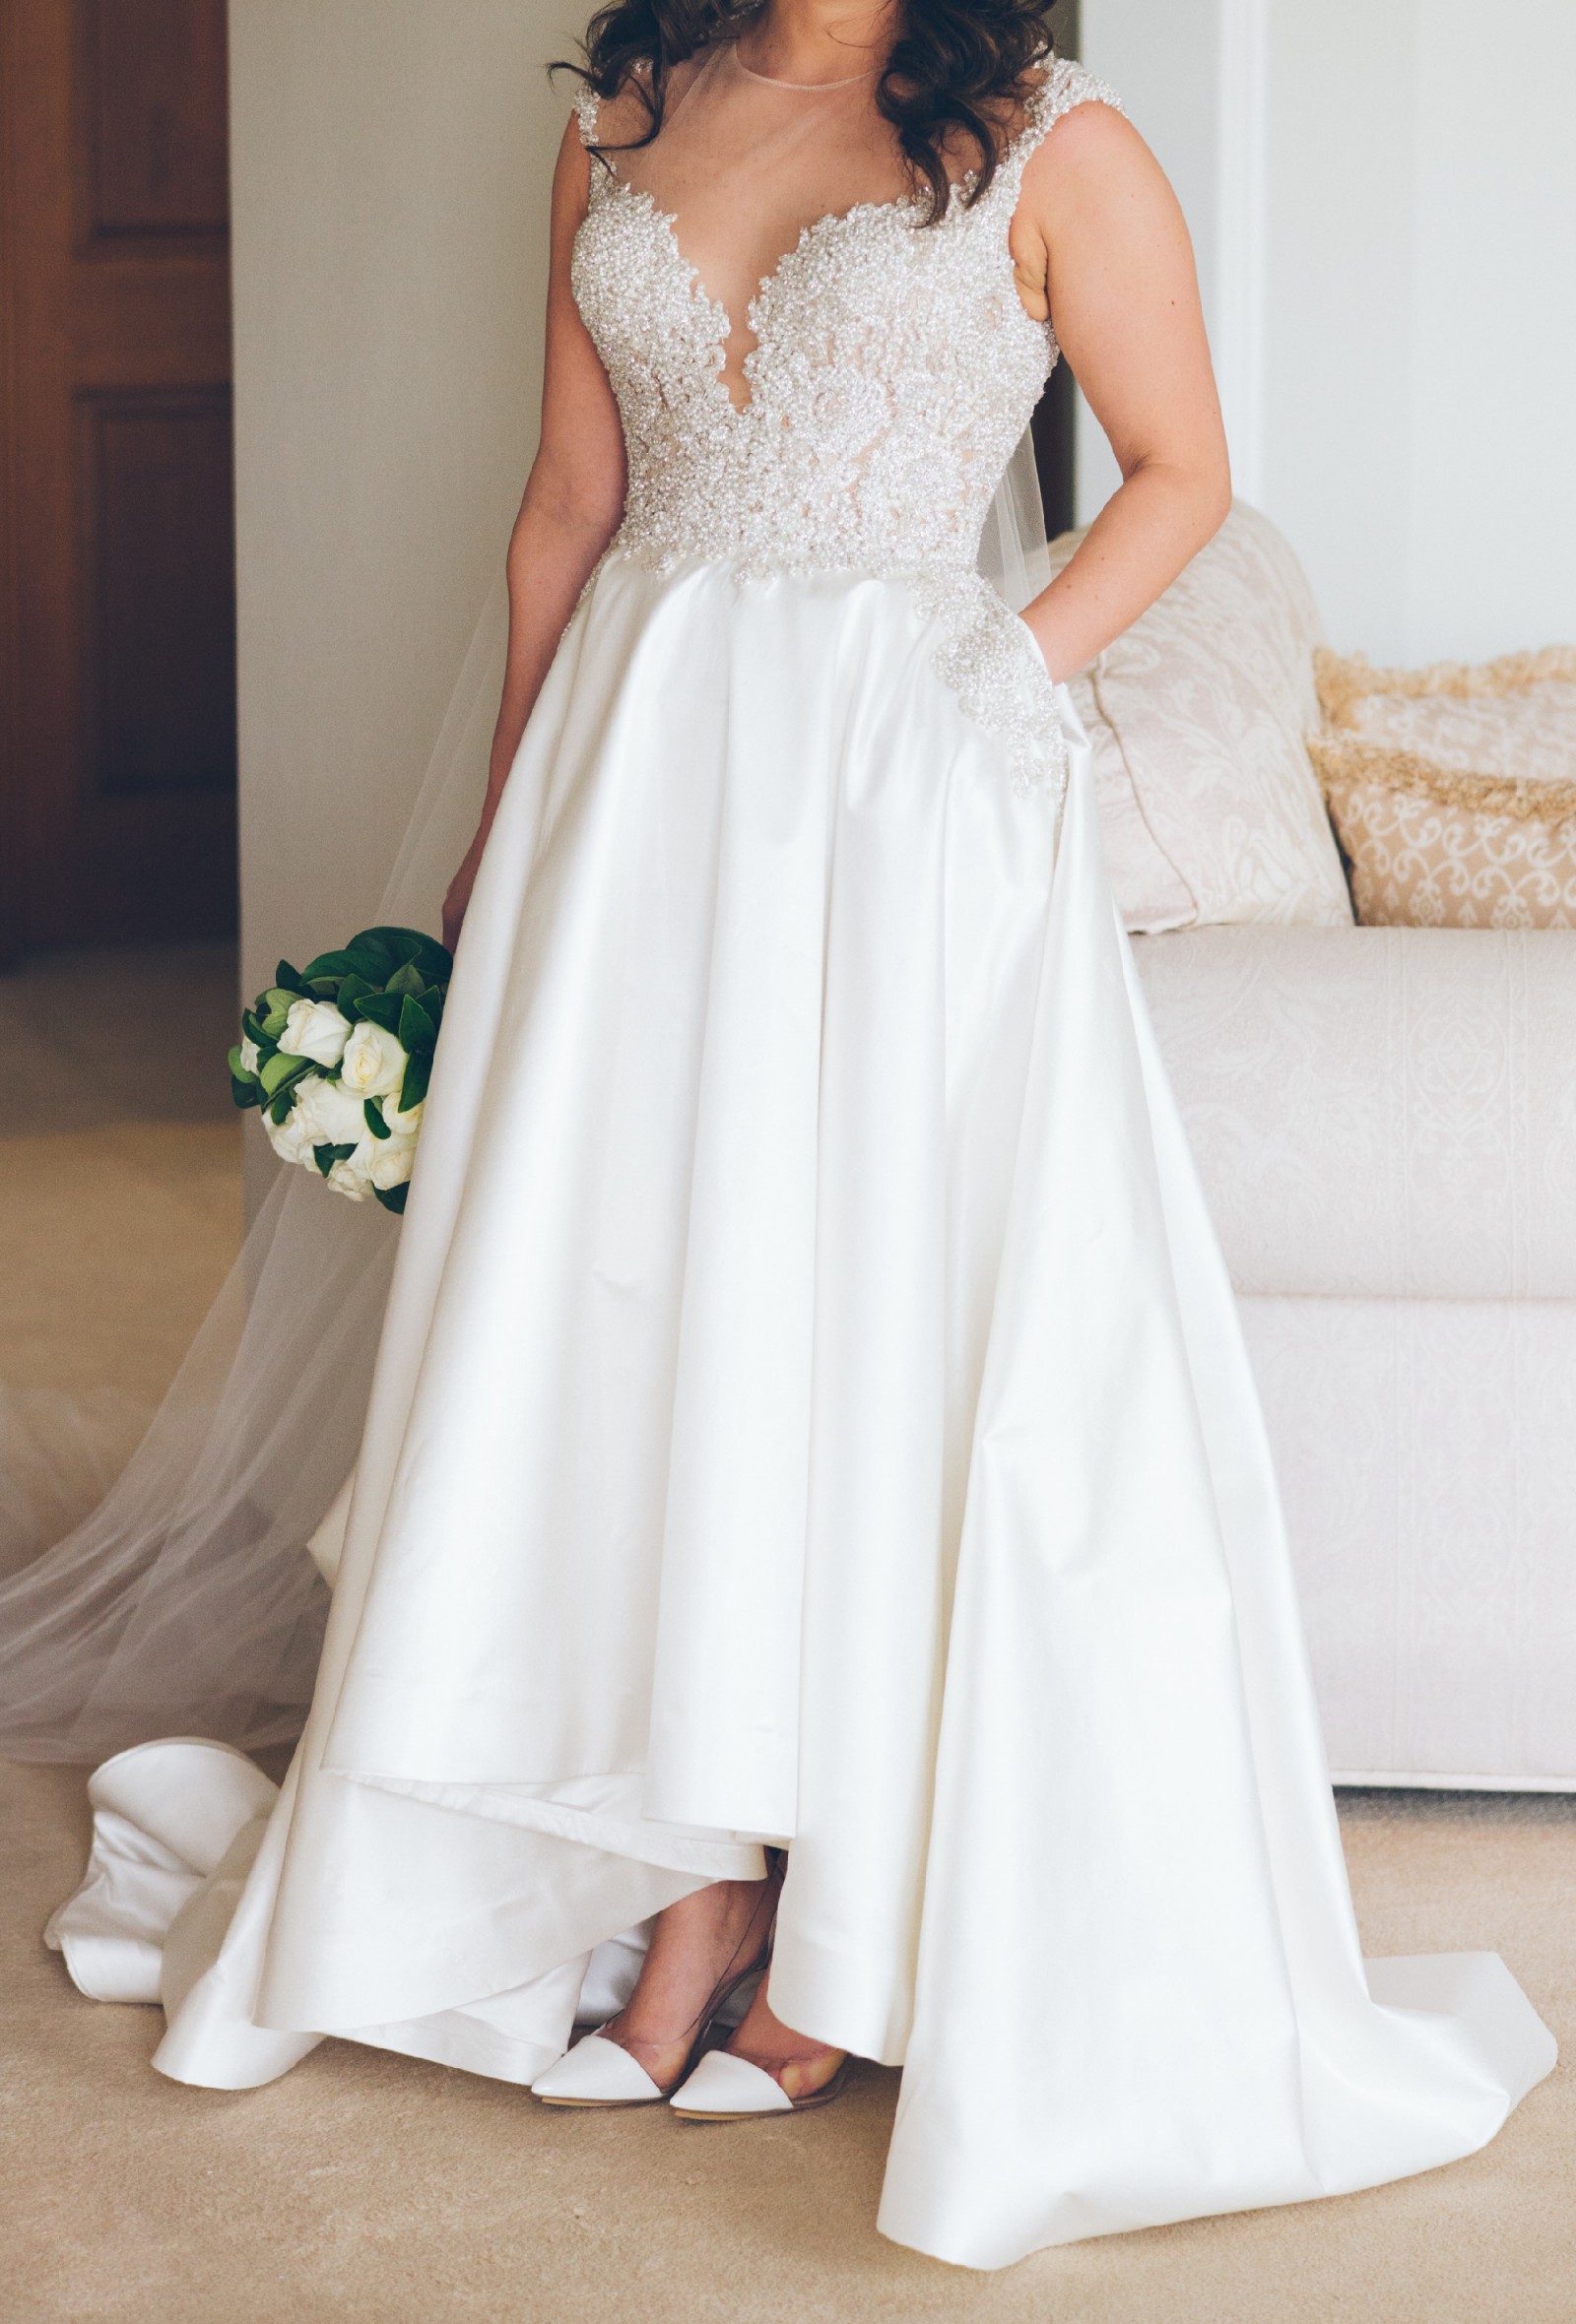 Mary Ioannidis Used Wedding Dress   Stillwhite